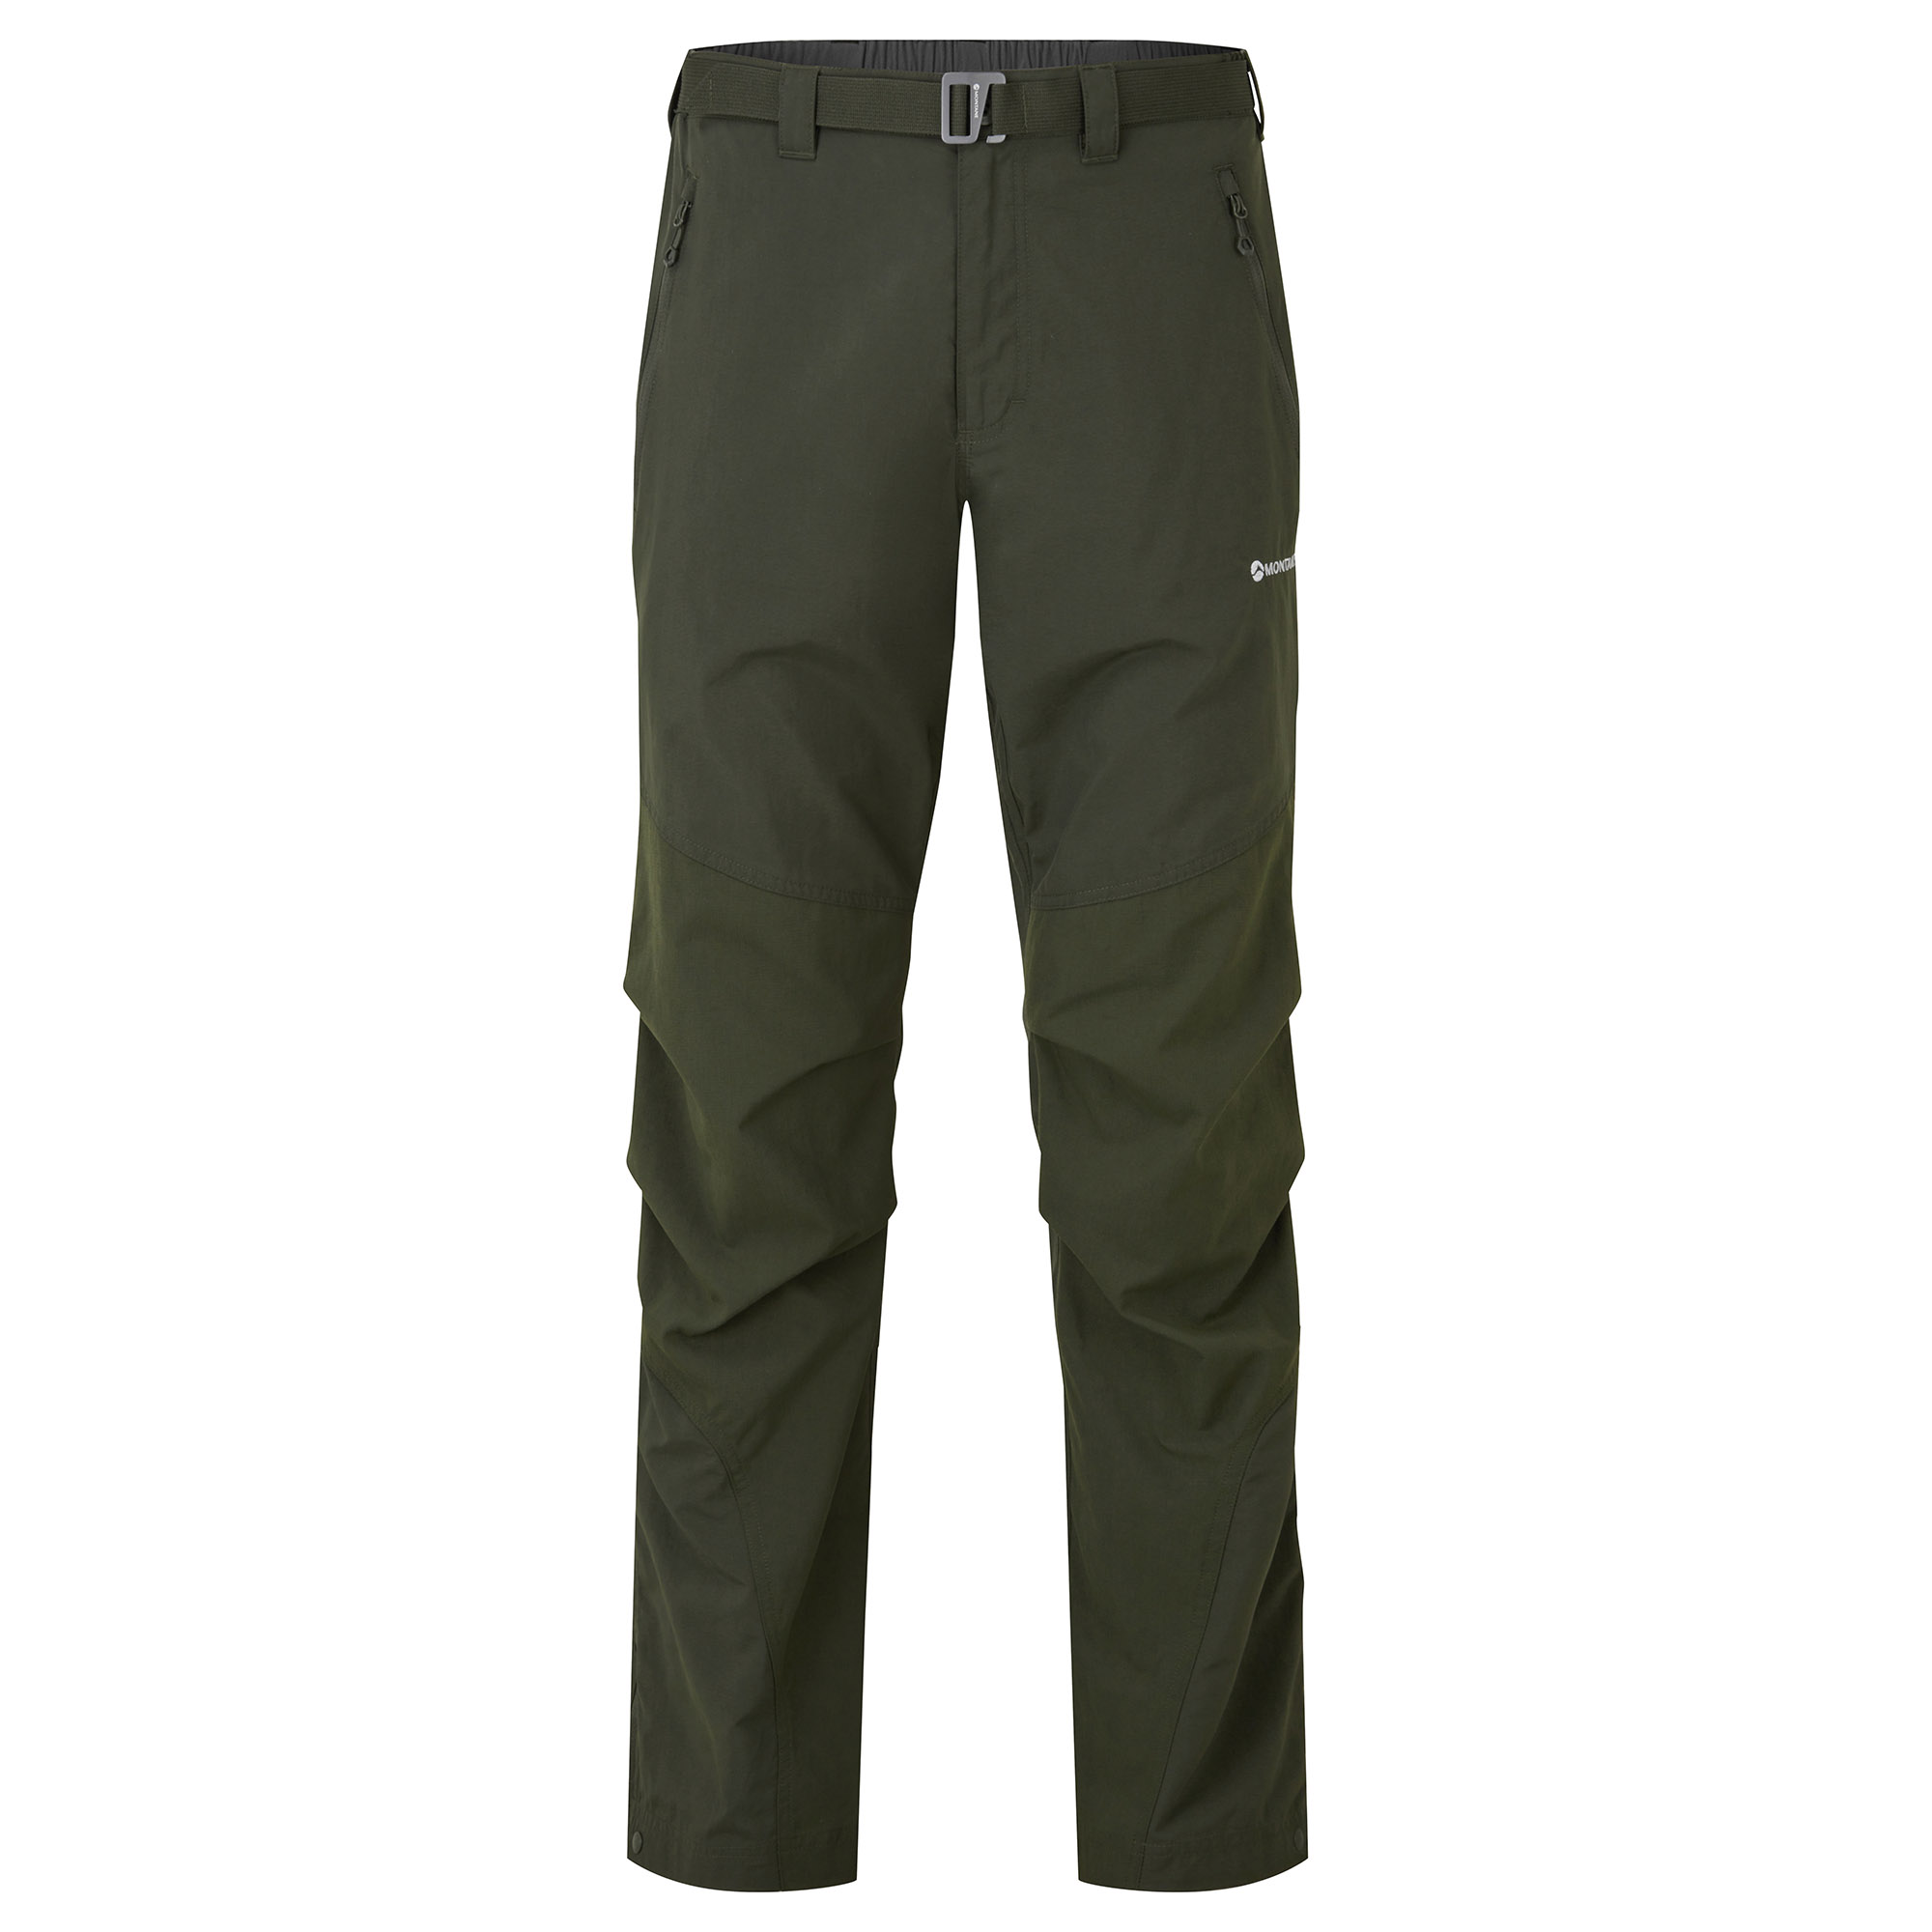 Montane pánské softshellové kalhoty Terra Pants - Zkrácené Nohavice Barva: Oak Green, Velikost: 36